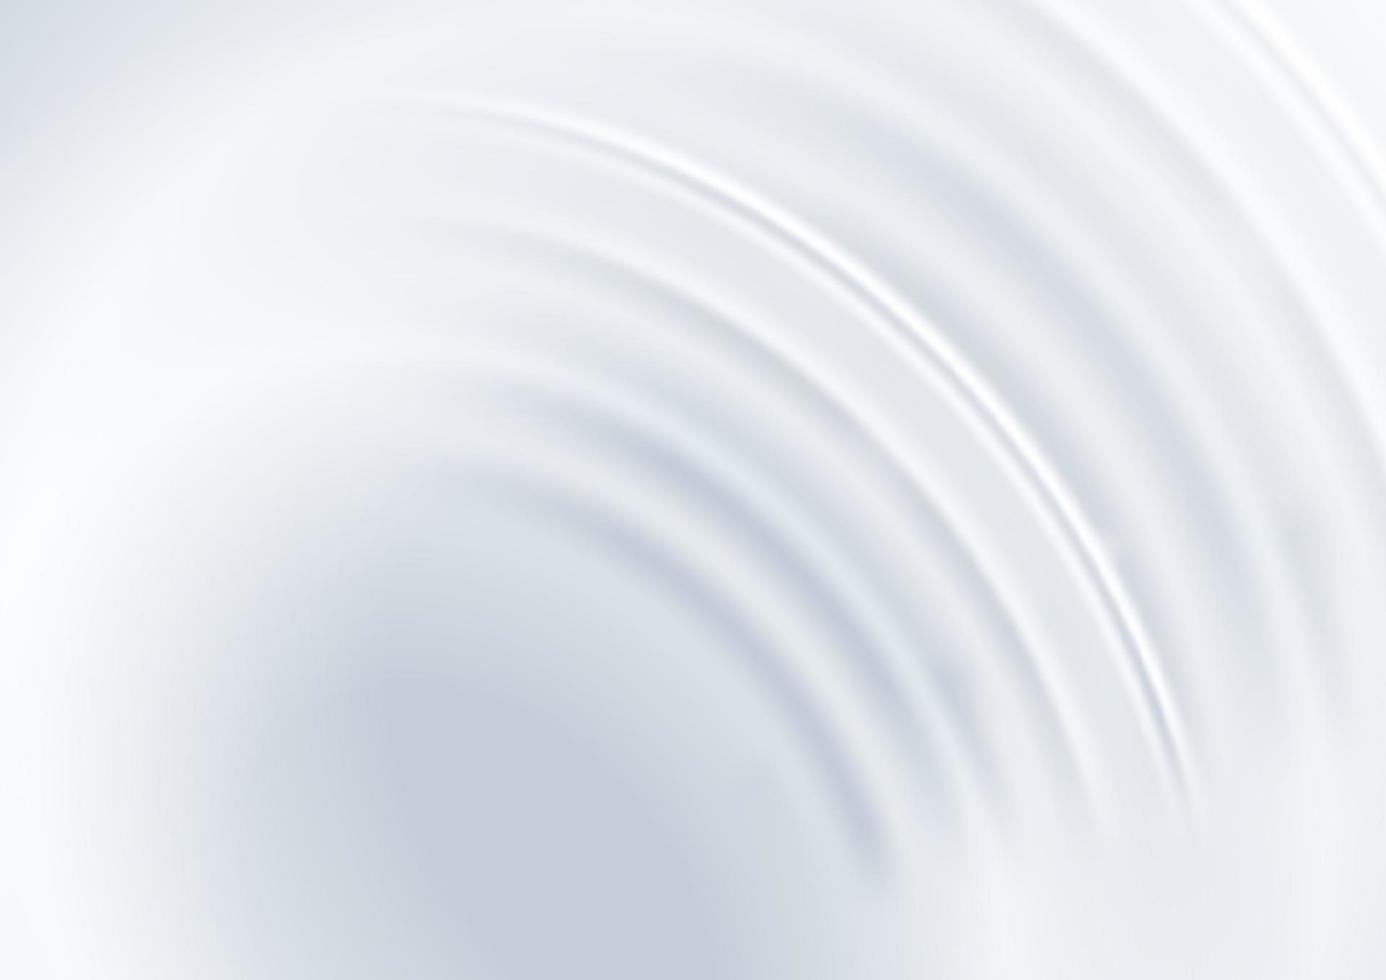 abstracto moderno 3d dinámico ondulado y curvo blanco, gris sobre fondo limpio. concepto de lujo. vector